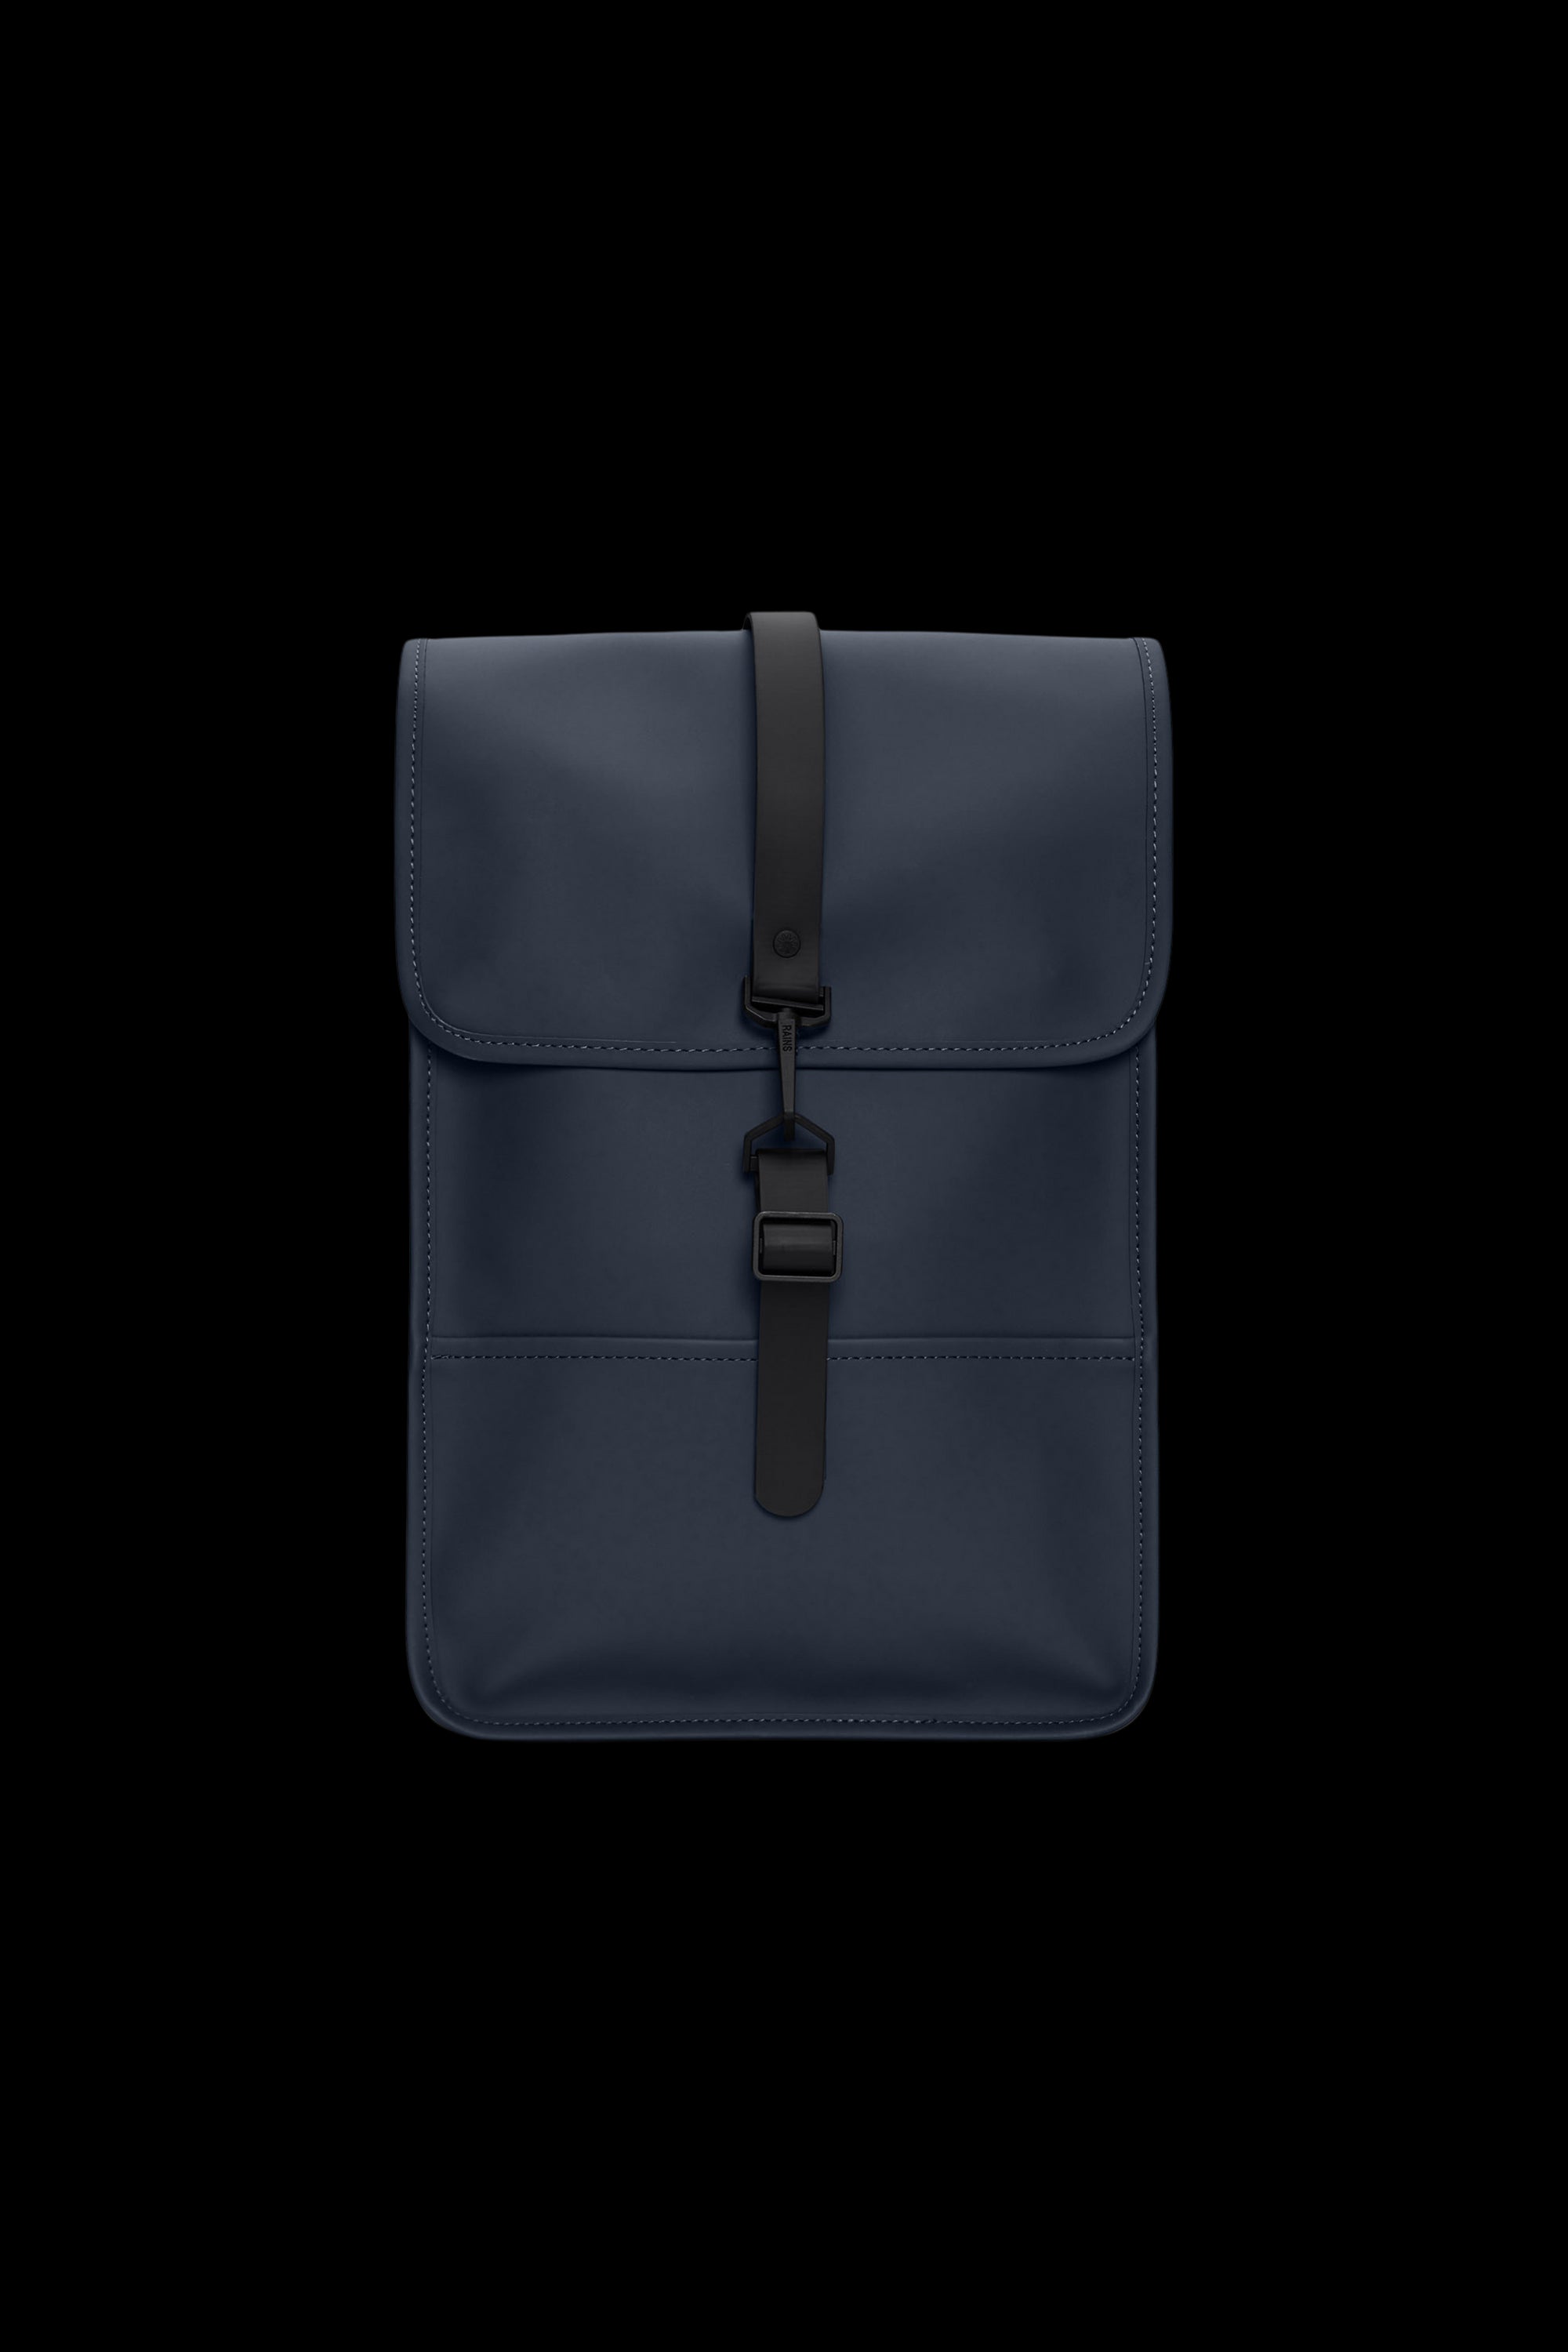 Zaino RAINS Backpack mini
Blu